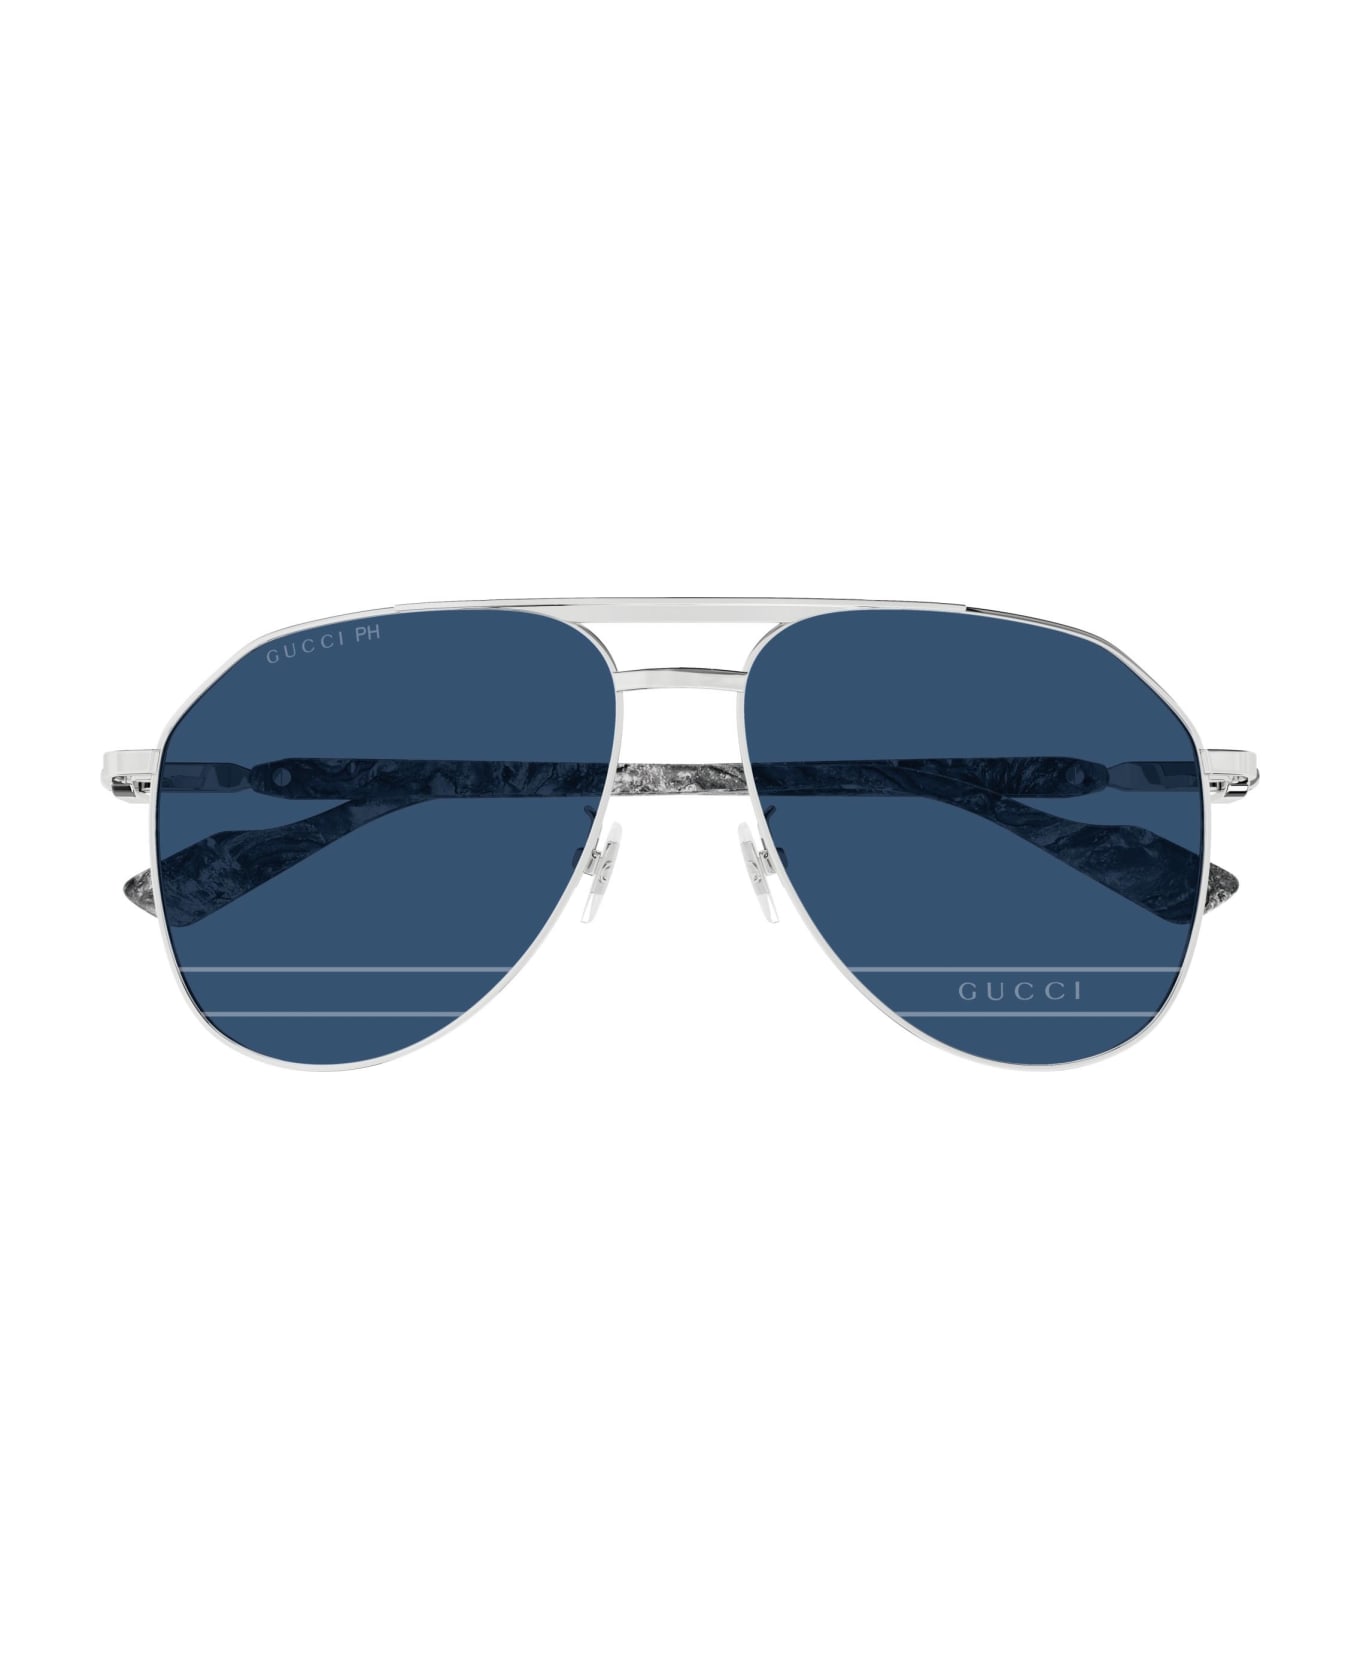 Gucci Eyewear Sunglasses - Silver/Azzurro